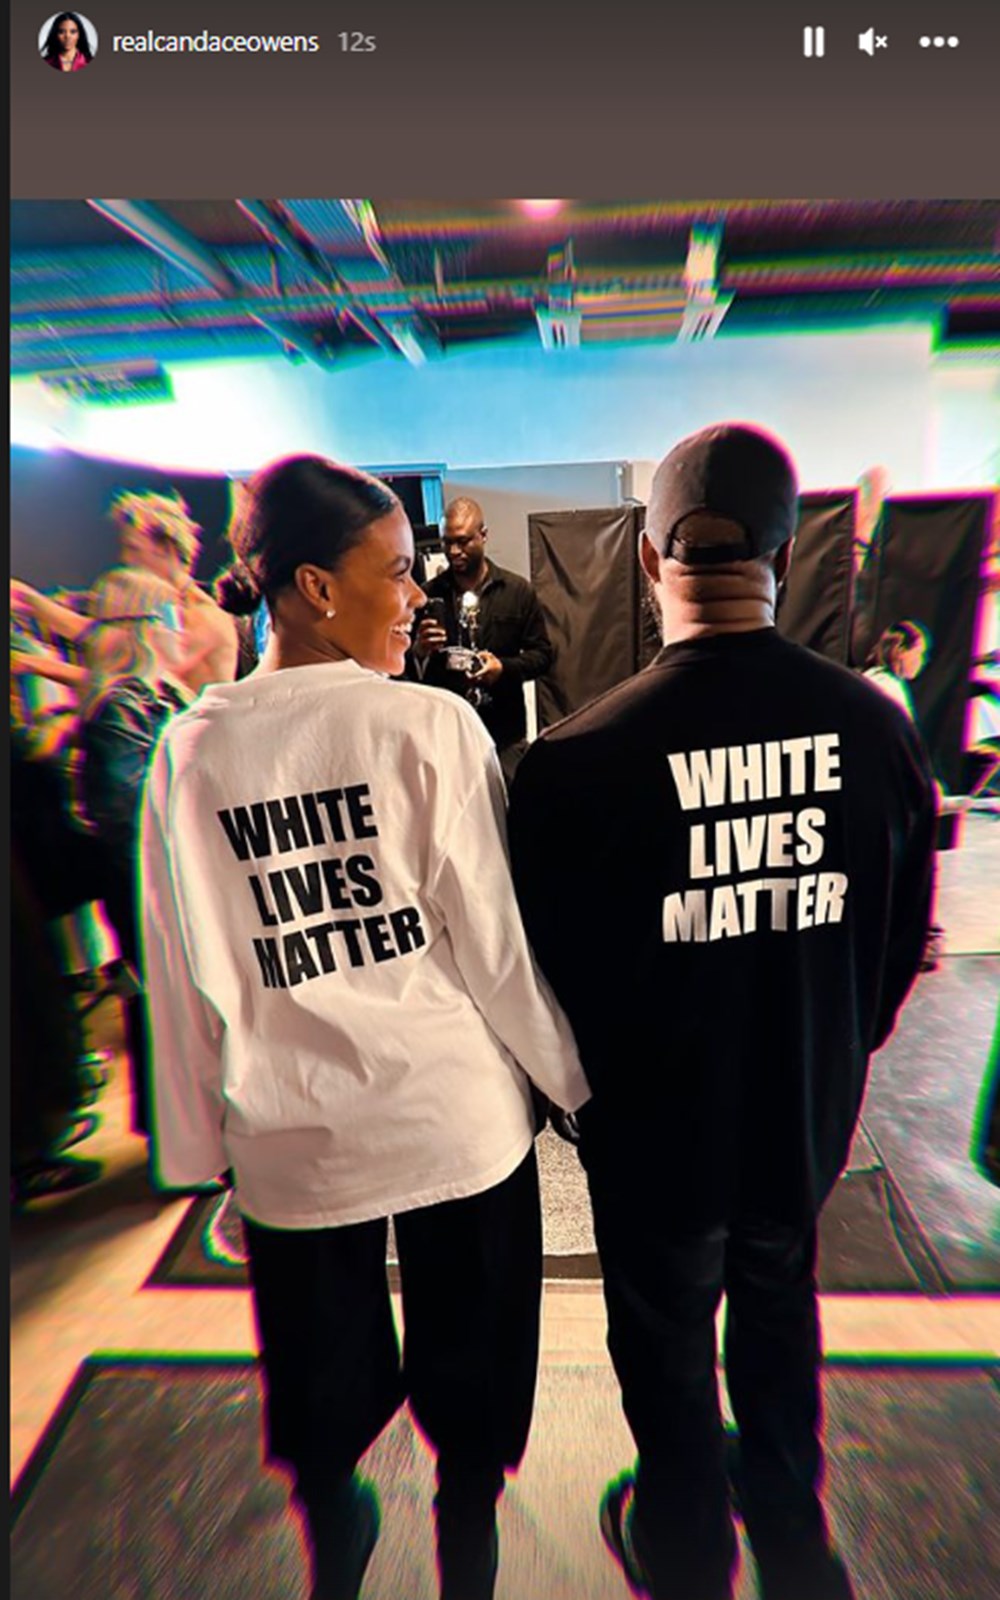 Kanye West'in giydiği "White Lives Matter" (Beyazların Hayatı Önemlidir) yazılı tişört tepki çekti - 2